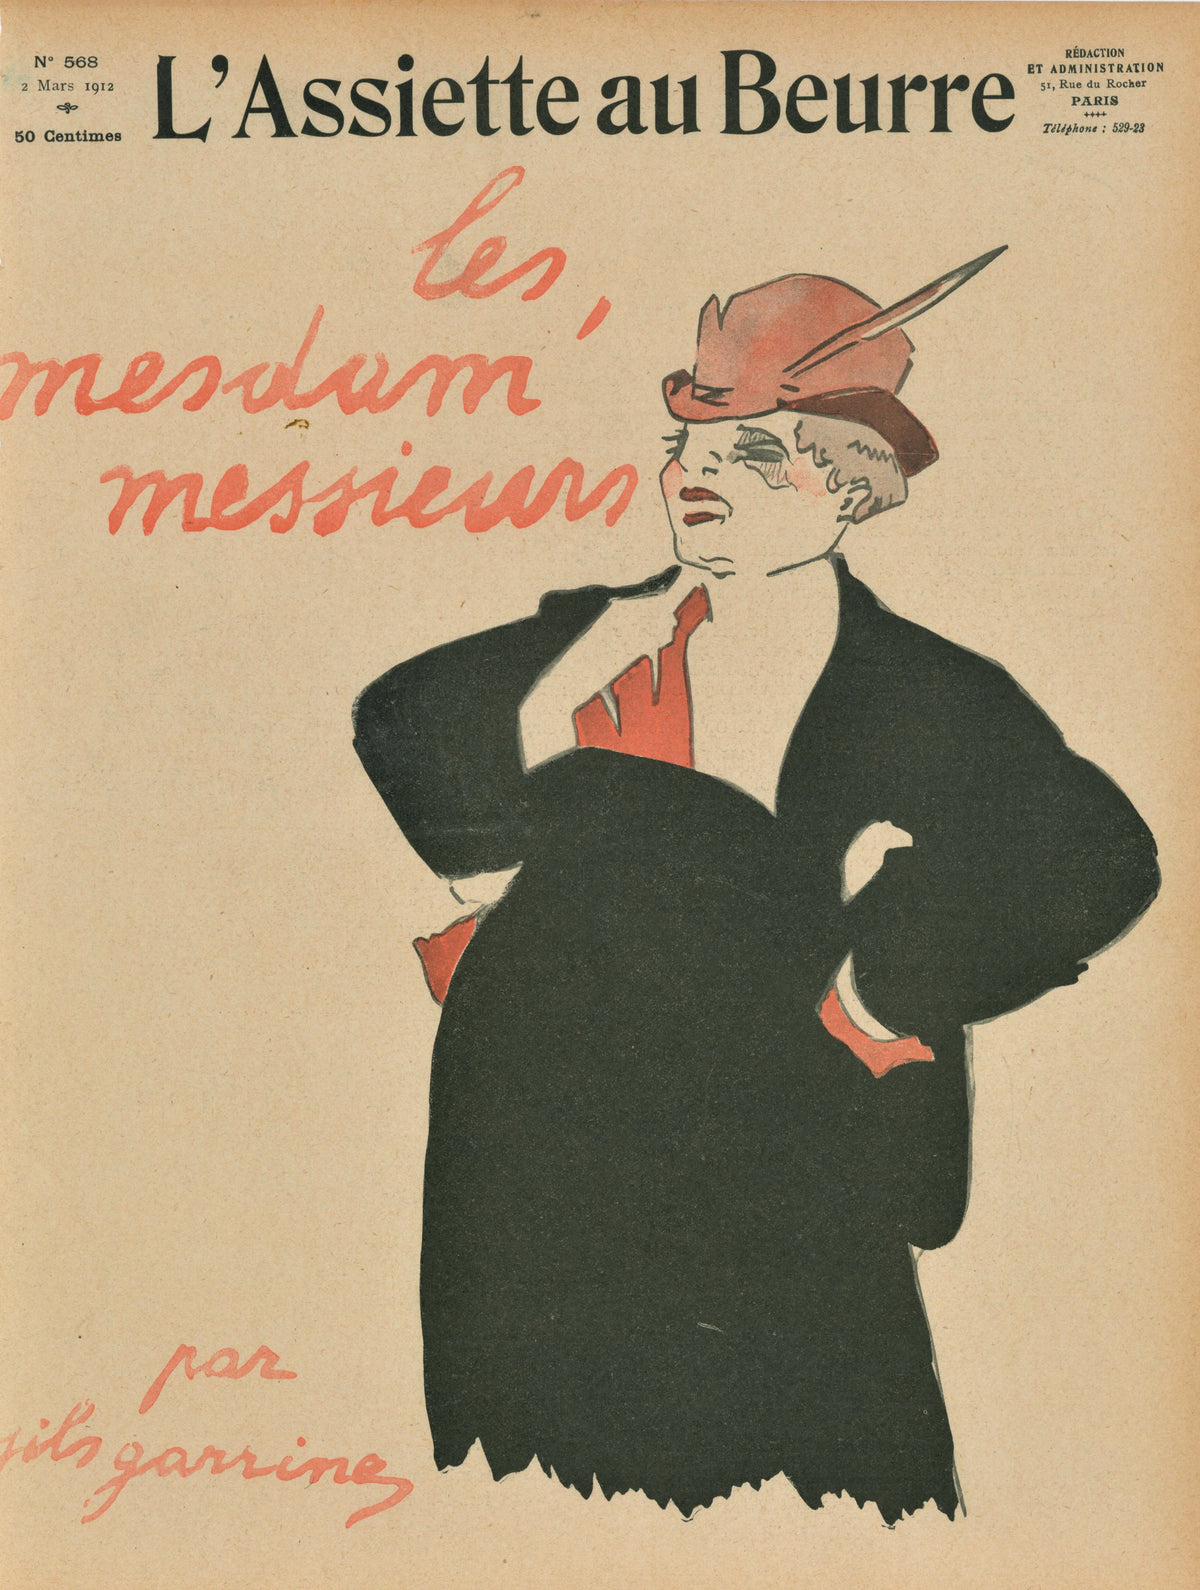 Les Mesdam Messieur- French Satirical Comic - Authentic Vintage Antique Print